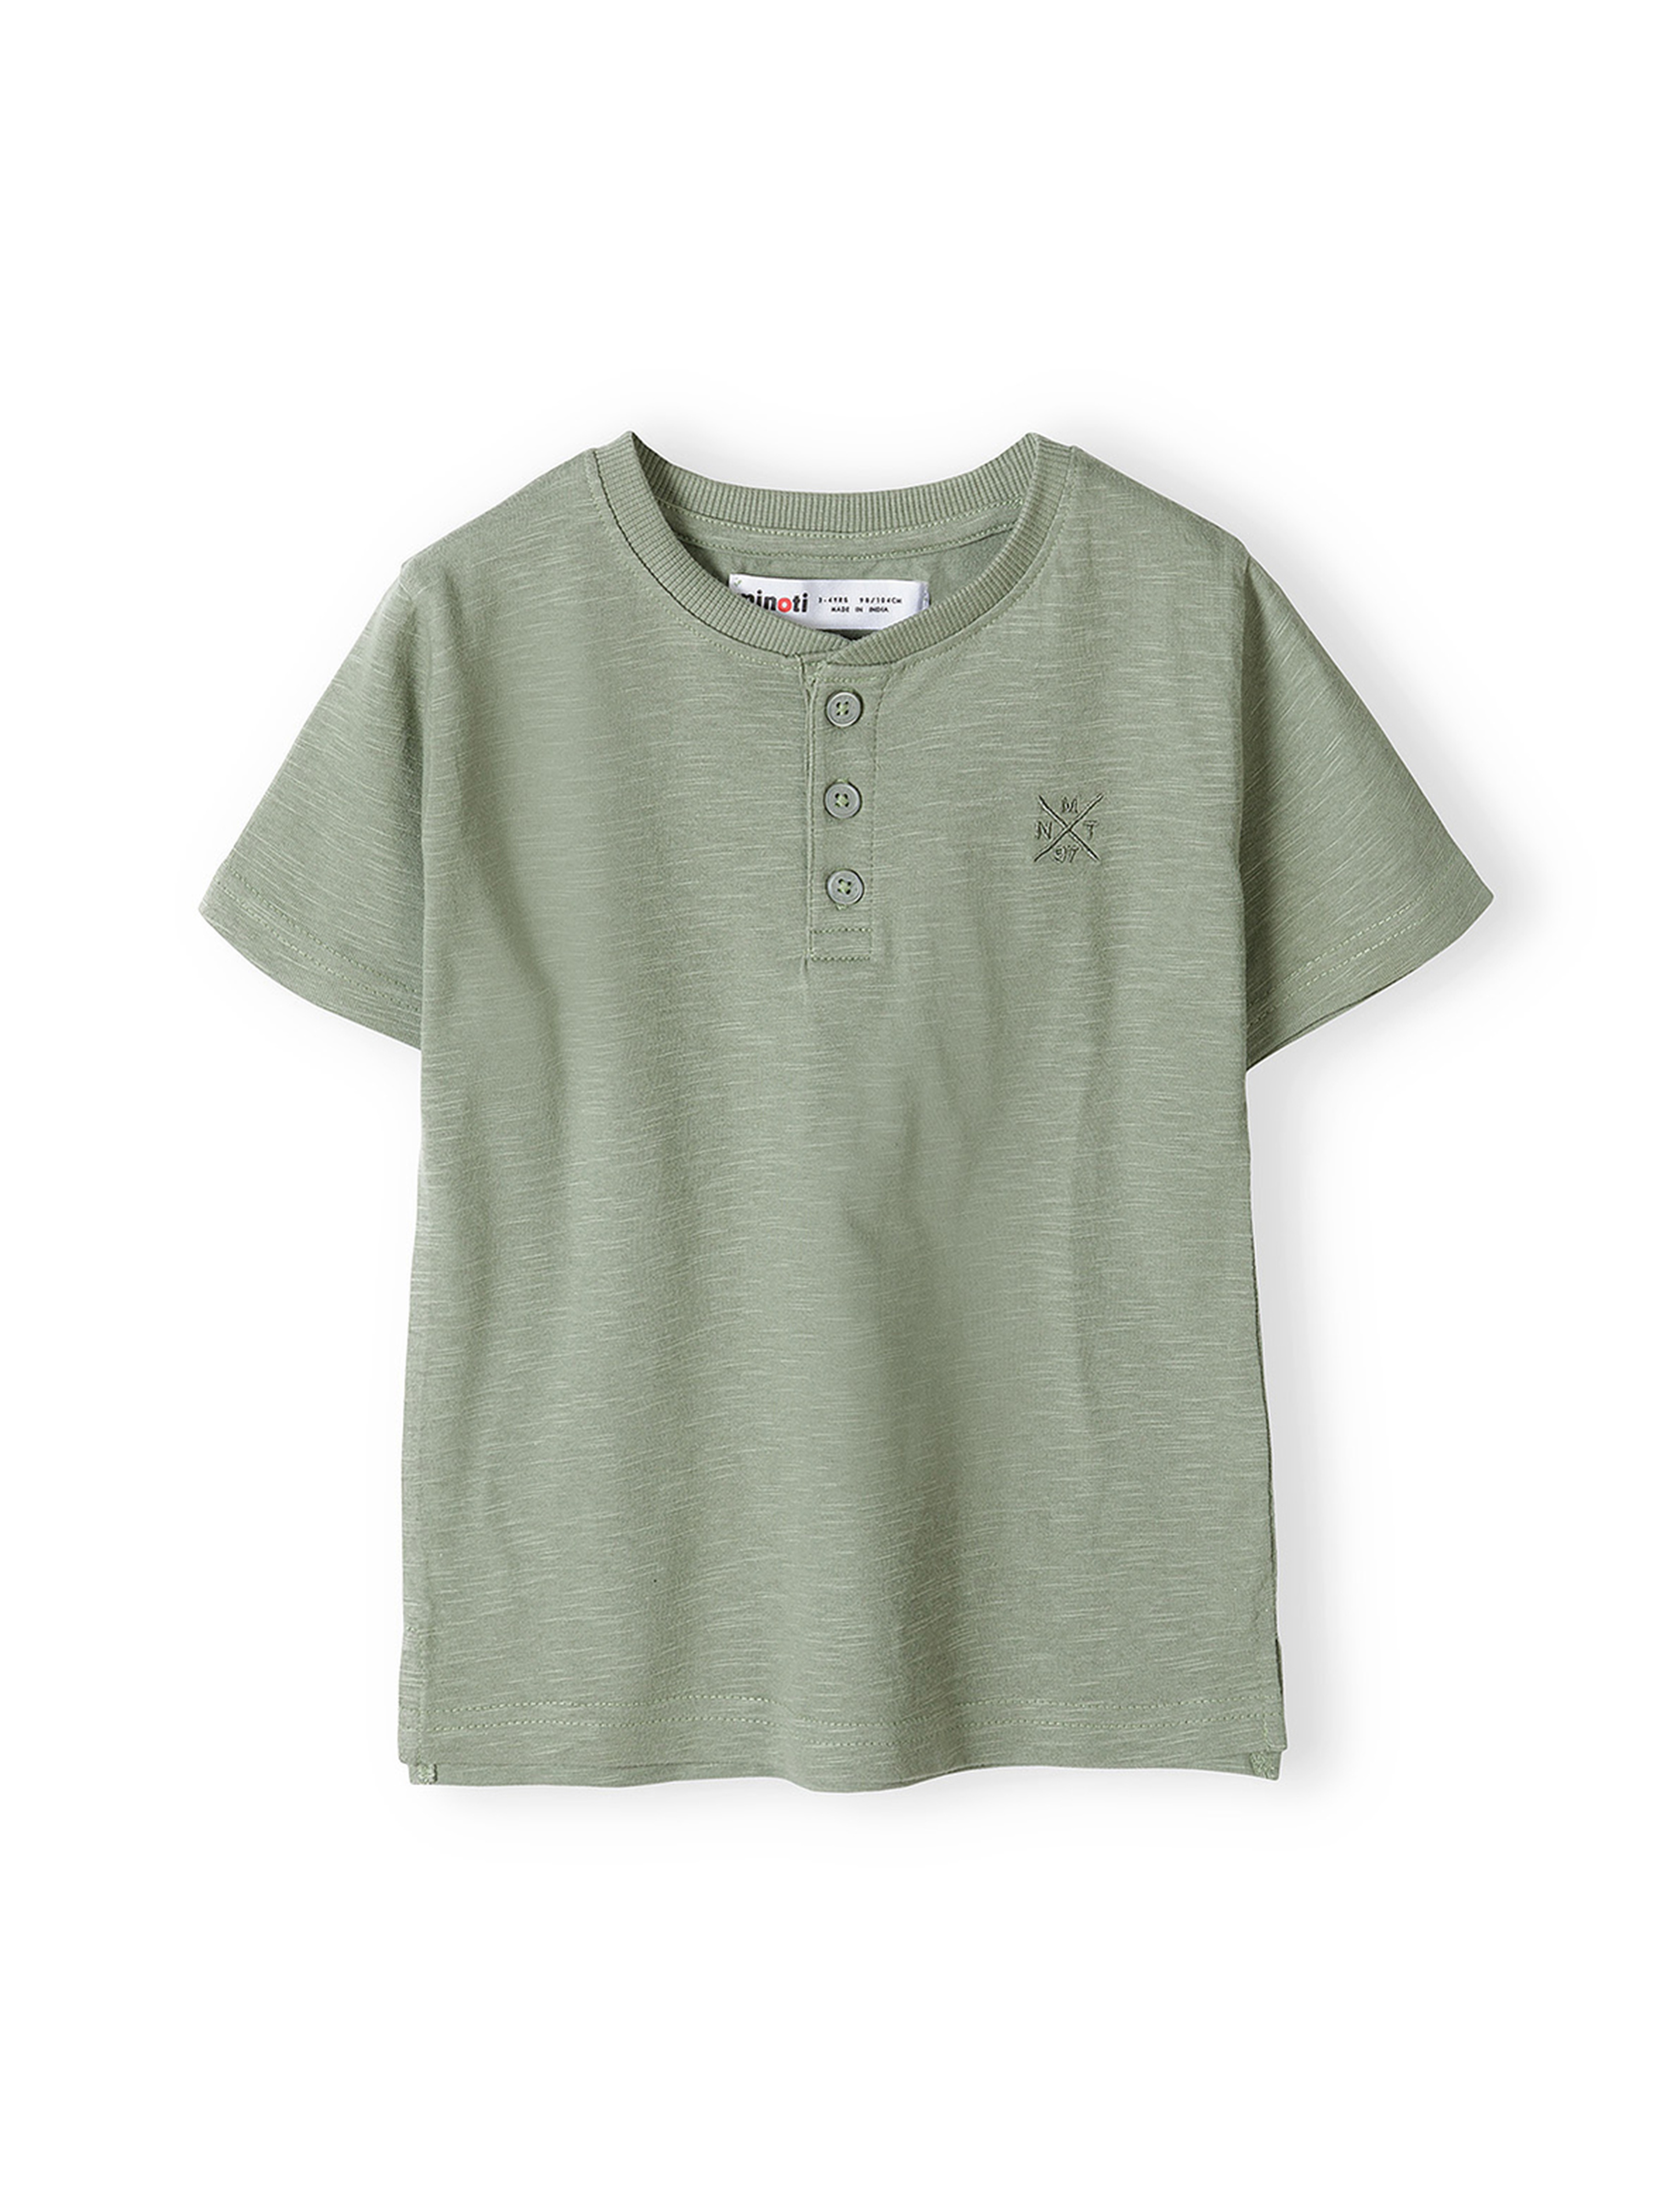 T-shirt bawełniany basic dla niemowlaka z guzikami khaki